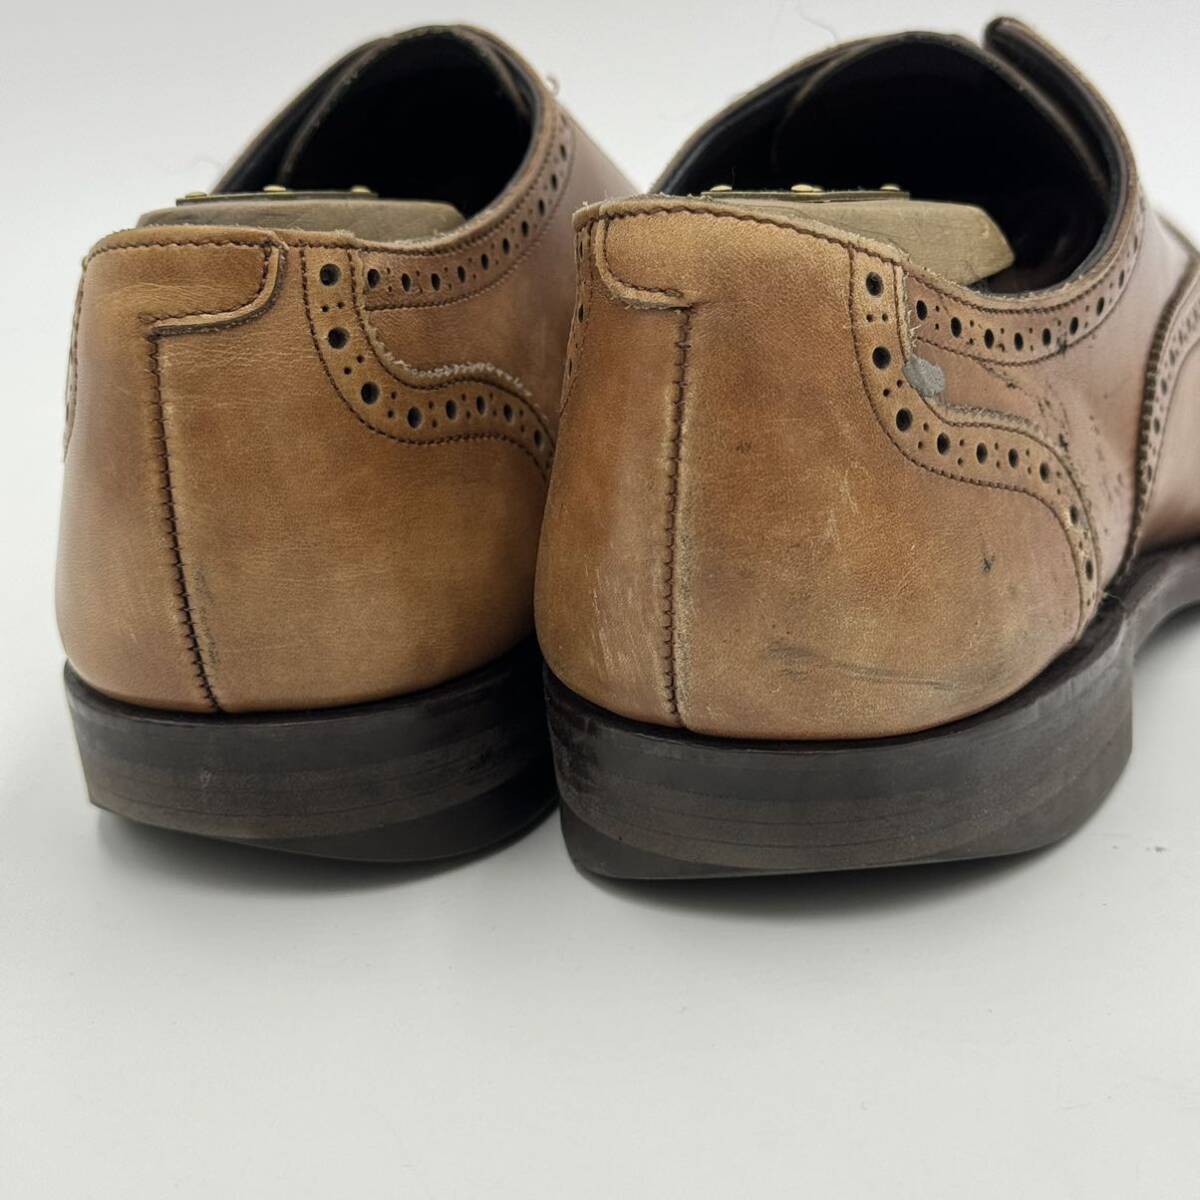 H ☆ 人気モデル!! '日本製' SHETLANDFOX シェットランドフォックス レザー ビジネスシューズ 革靴 ウィングチップ メダオリン 6.5 紳士靴の画像3